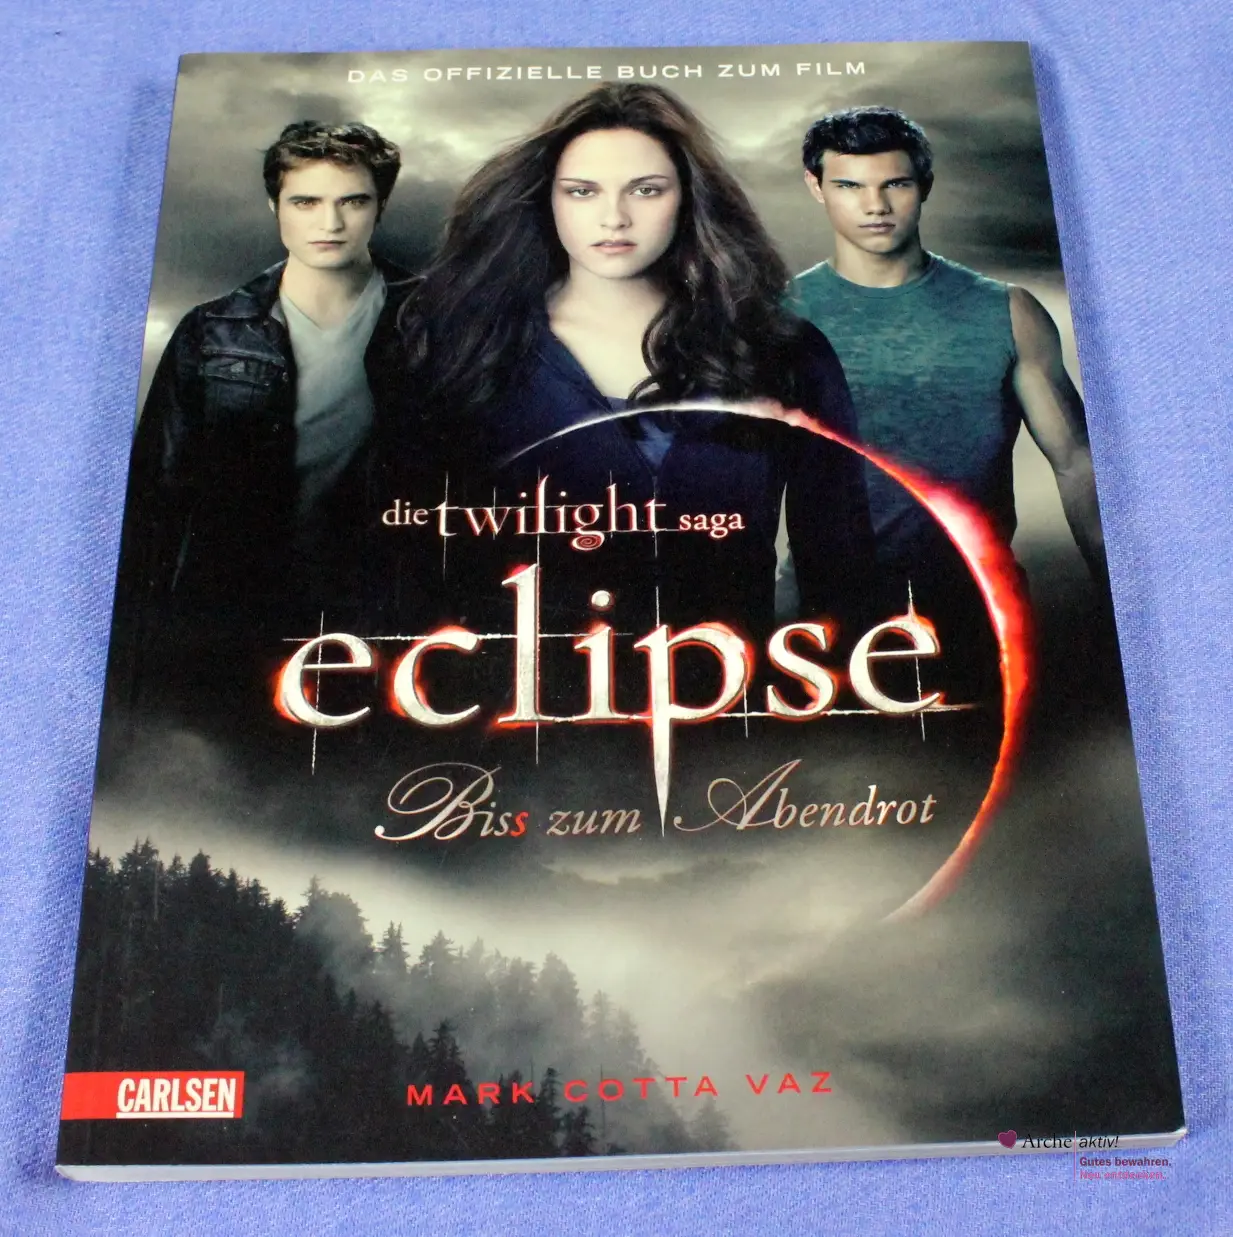 Die Twilight Saga - Eclipse-Biss zum Abendrot - das offizielle Buch zum Film, gebraucht